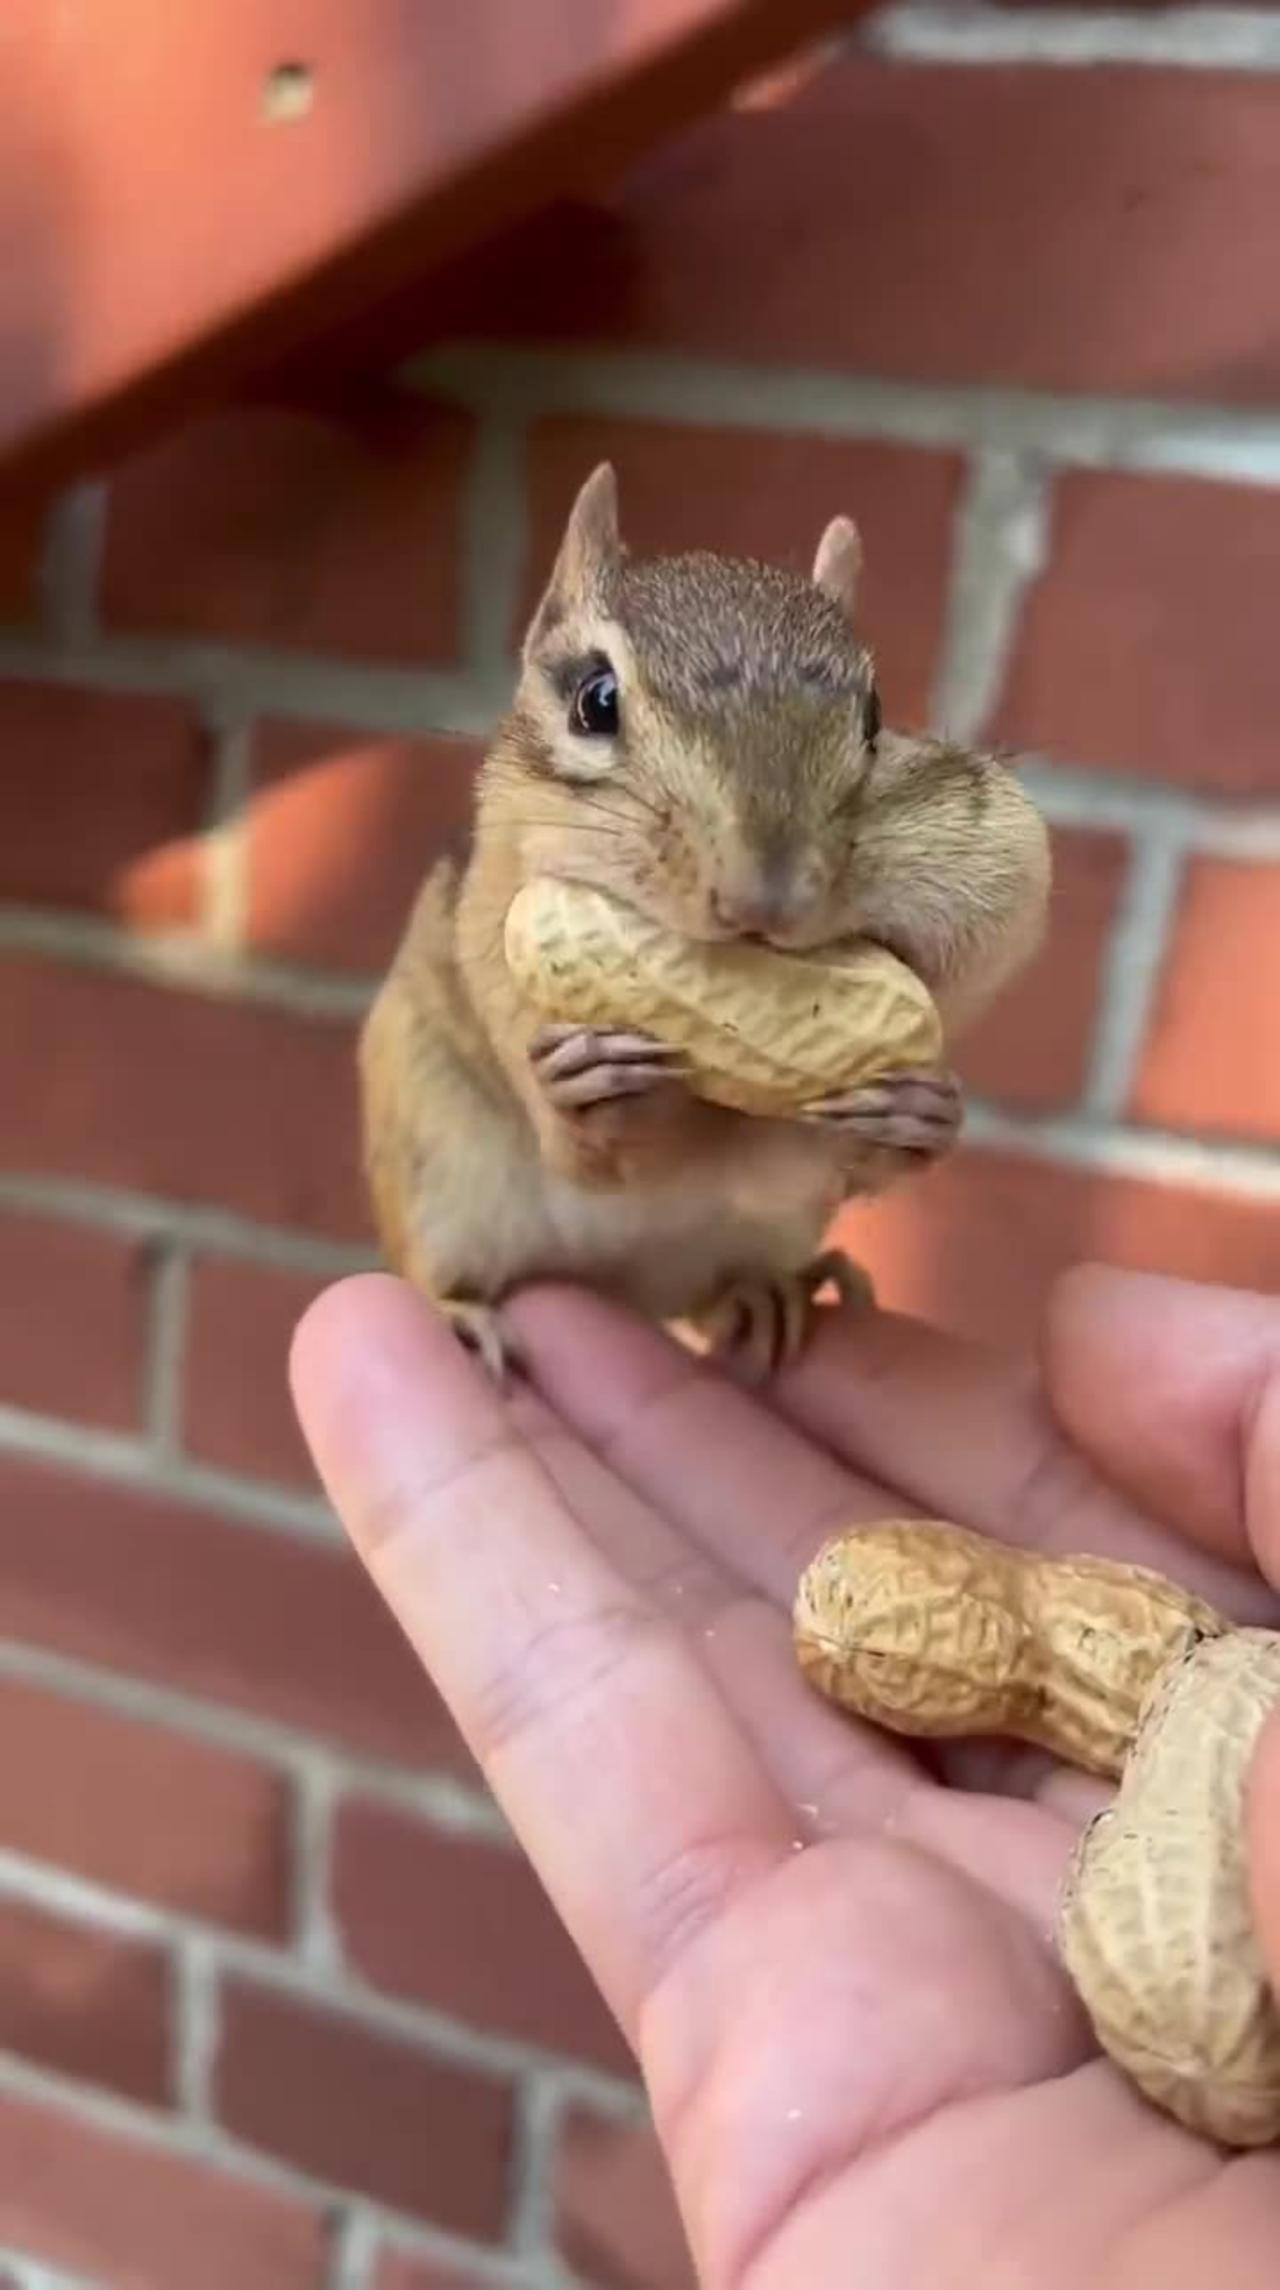 Cute squirrel eating a peanut